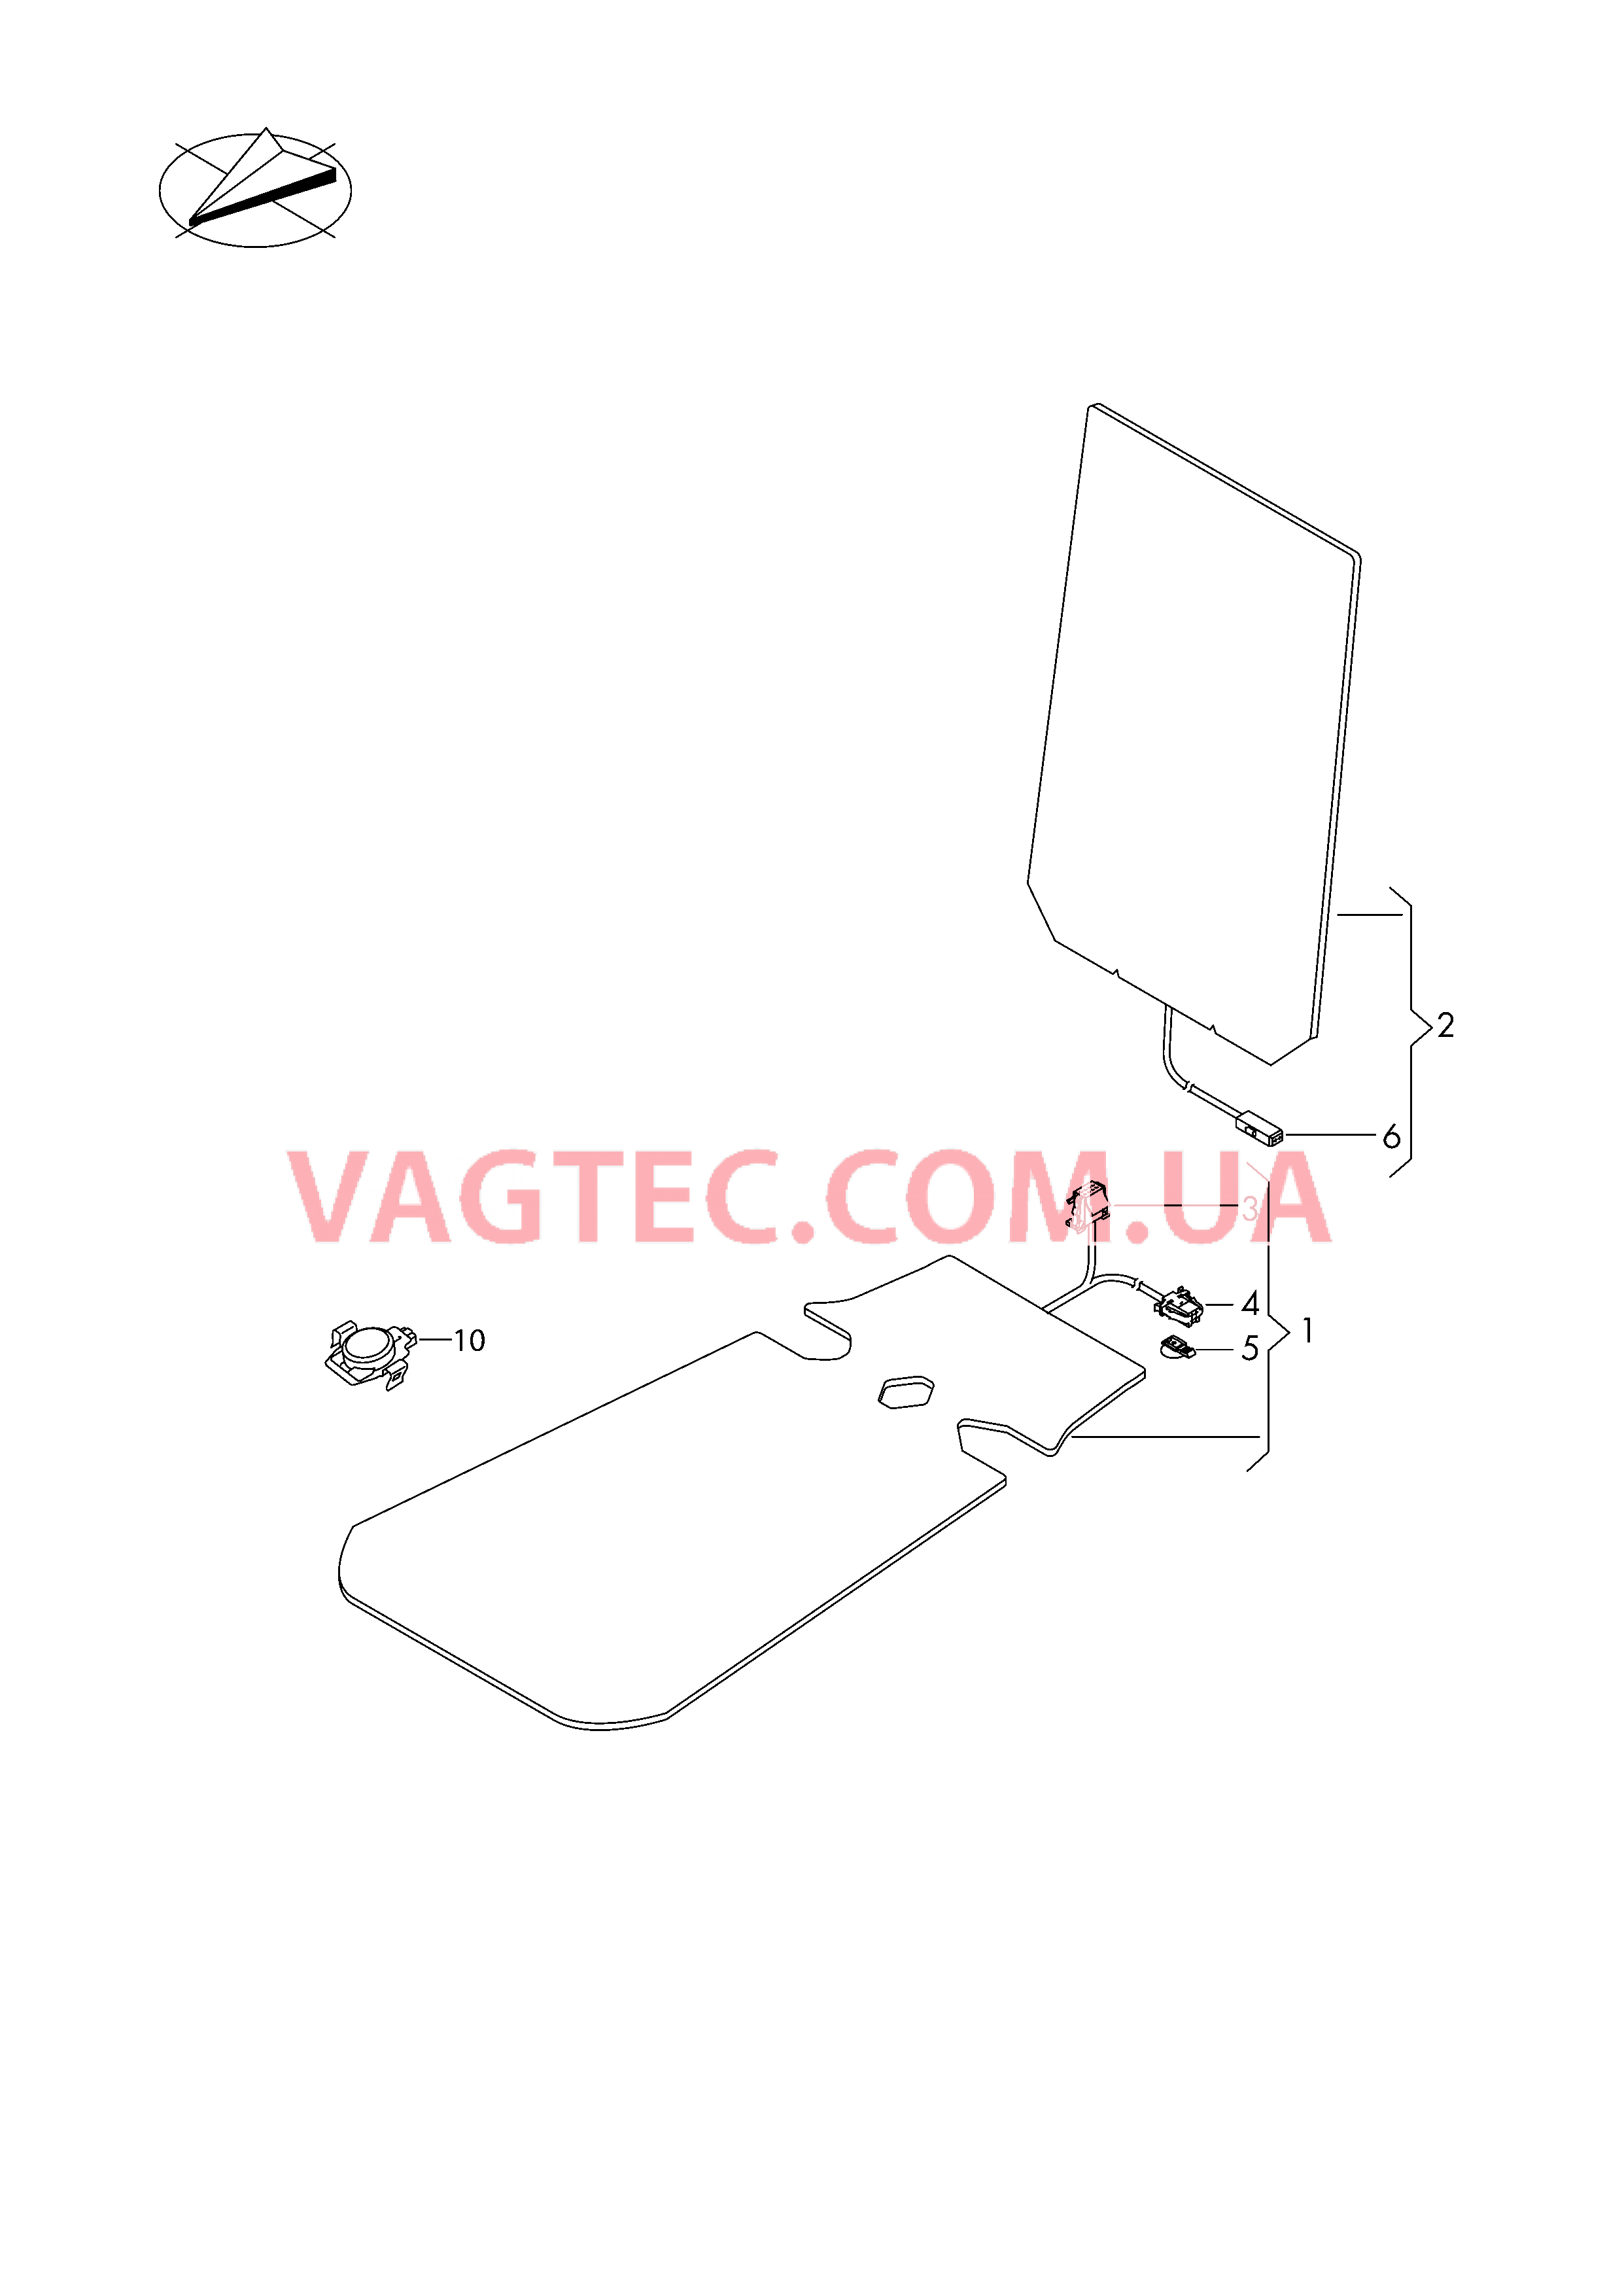 Электродетали для обогрева подушки и спинки сиденья  Вставка распознавания занятости сиденья  для VOLKSWAGEN Tiguan 2017-1